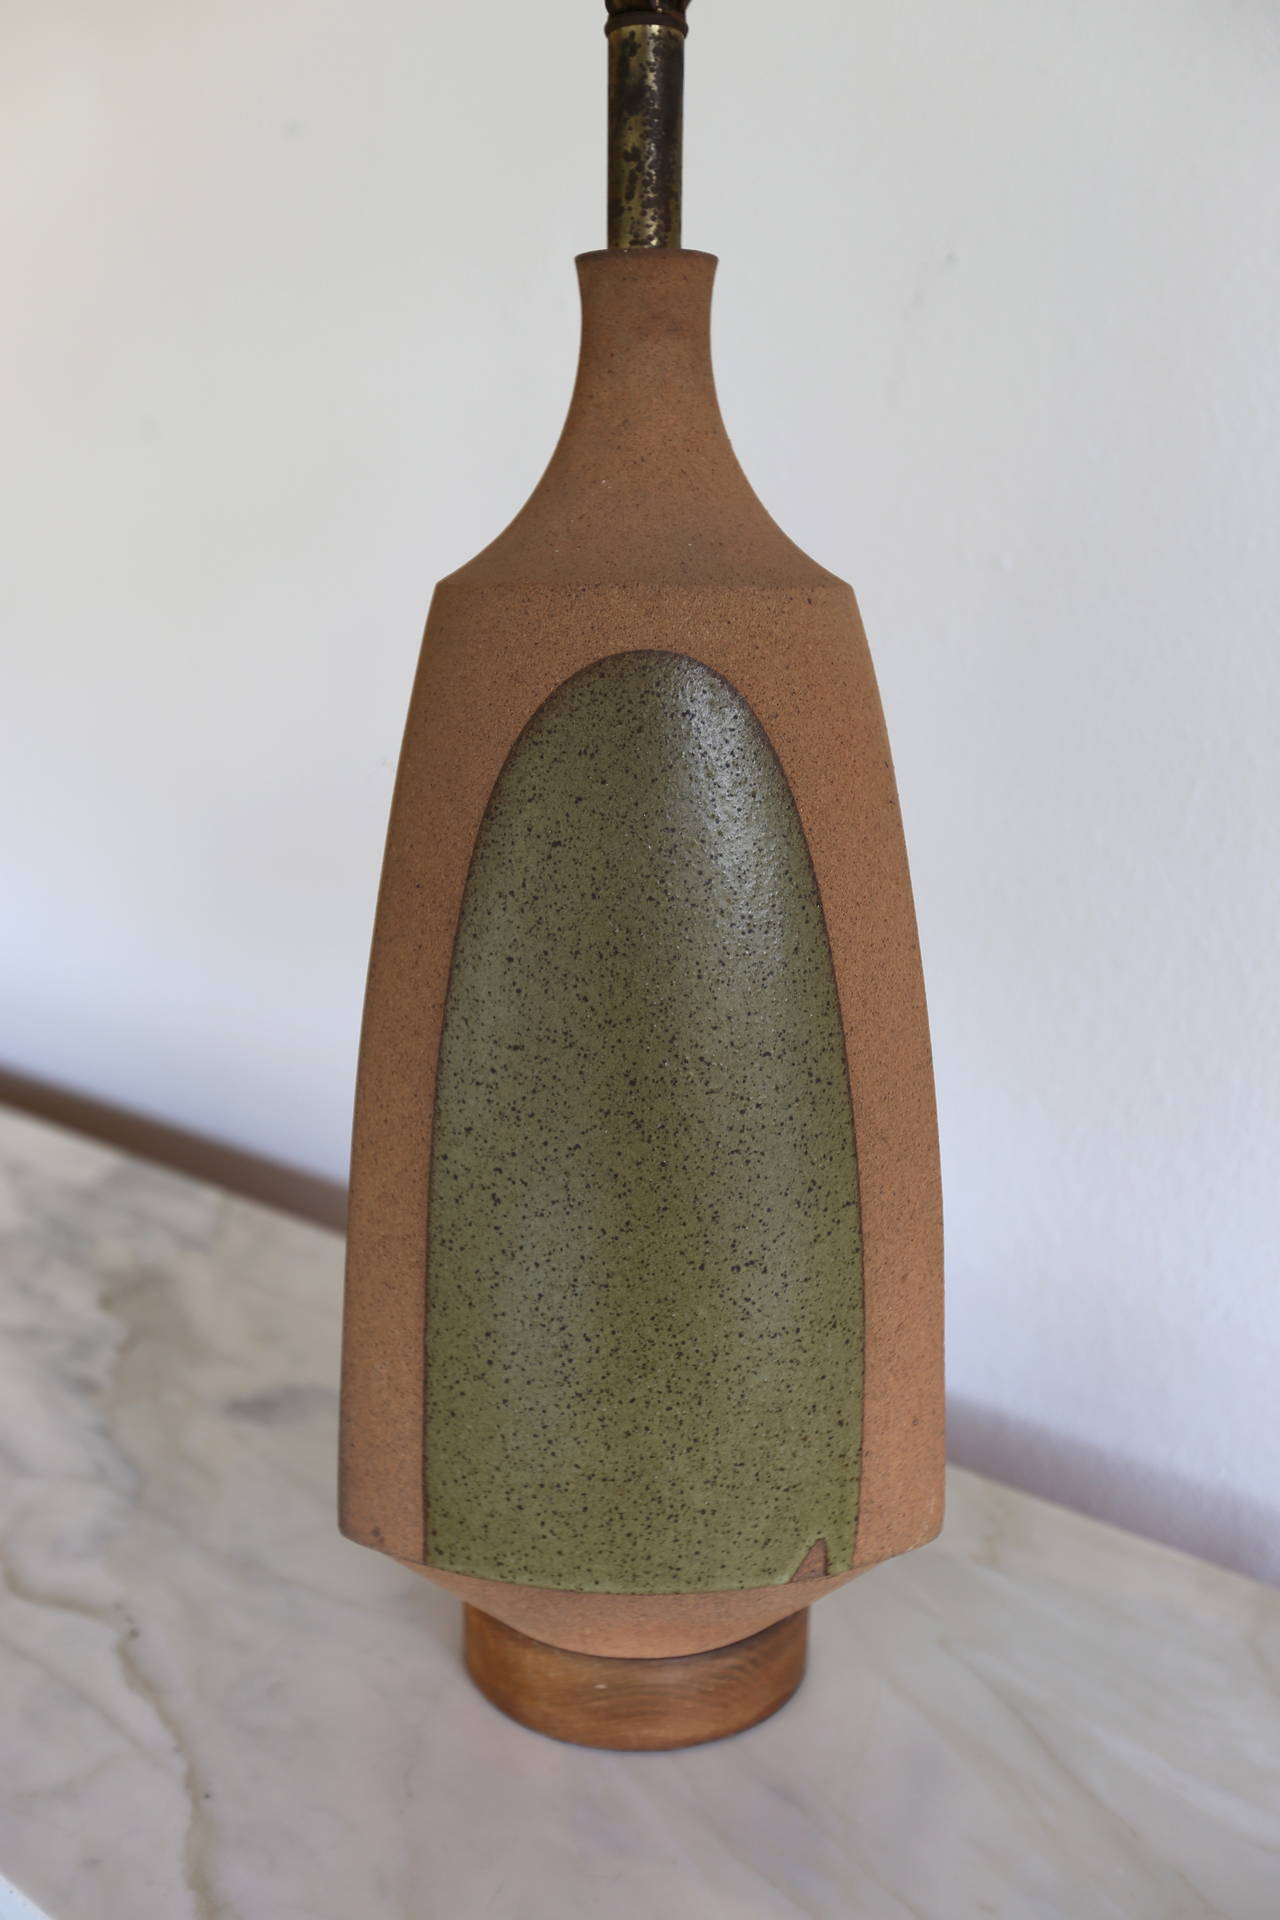 Ceramic lamp by David Cressey.